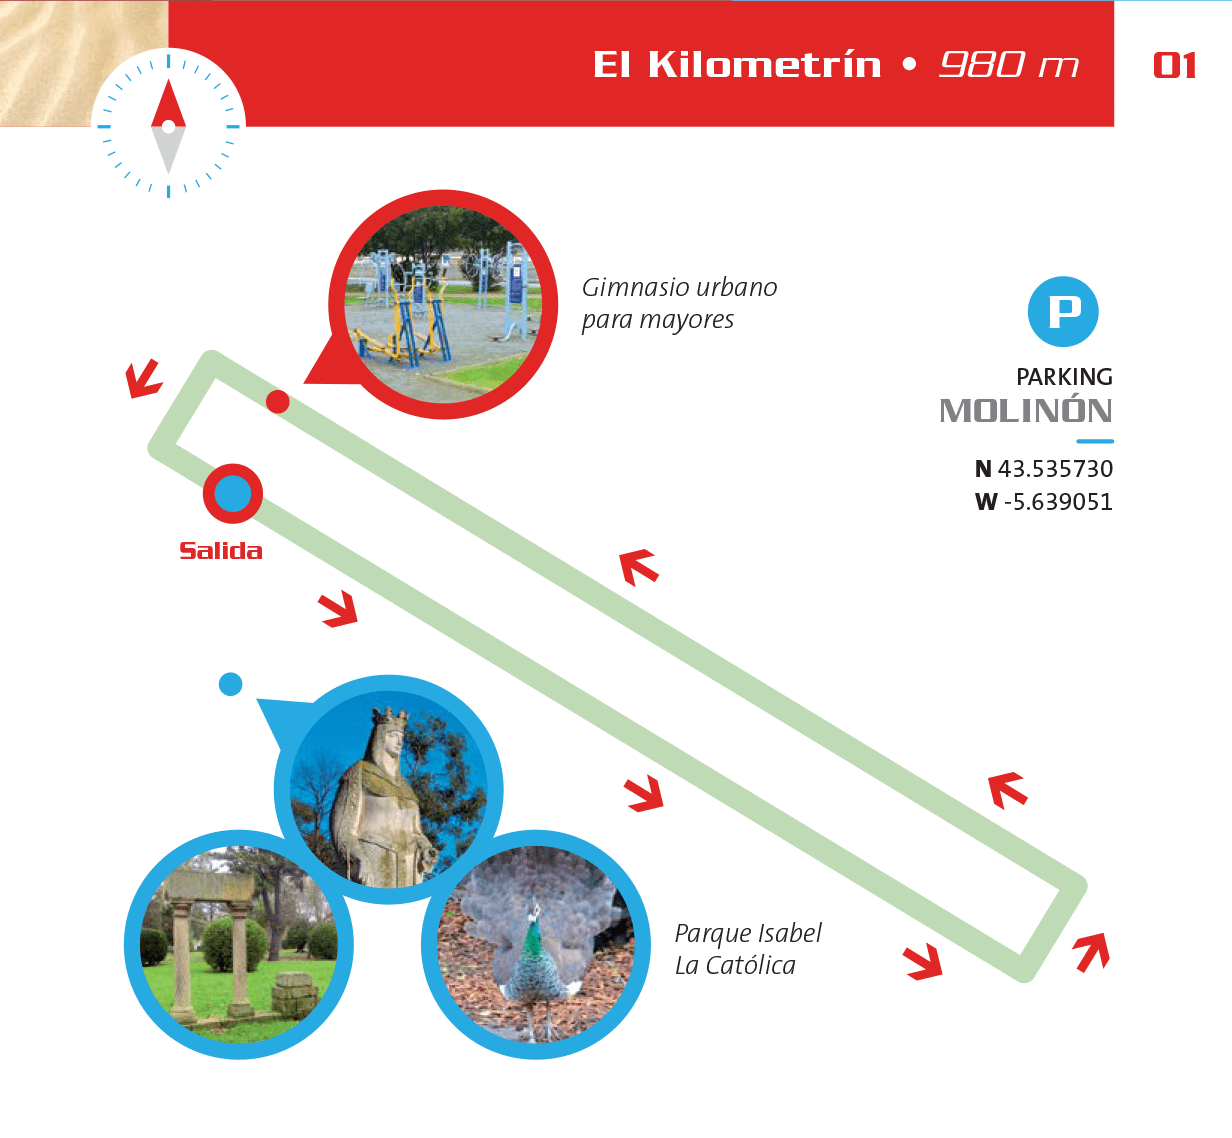 Detalles de la ruta EL Kilometrín